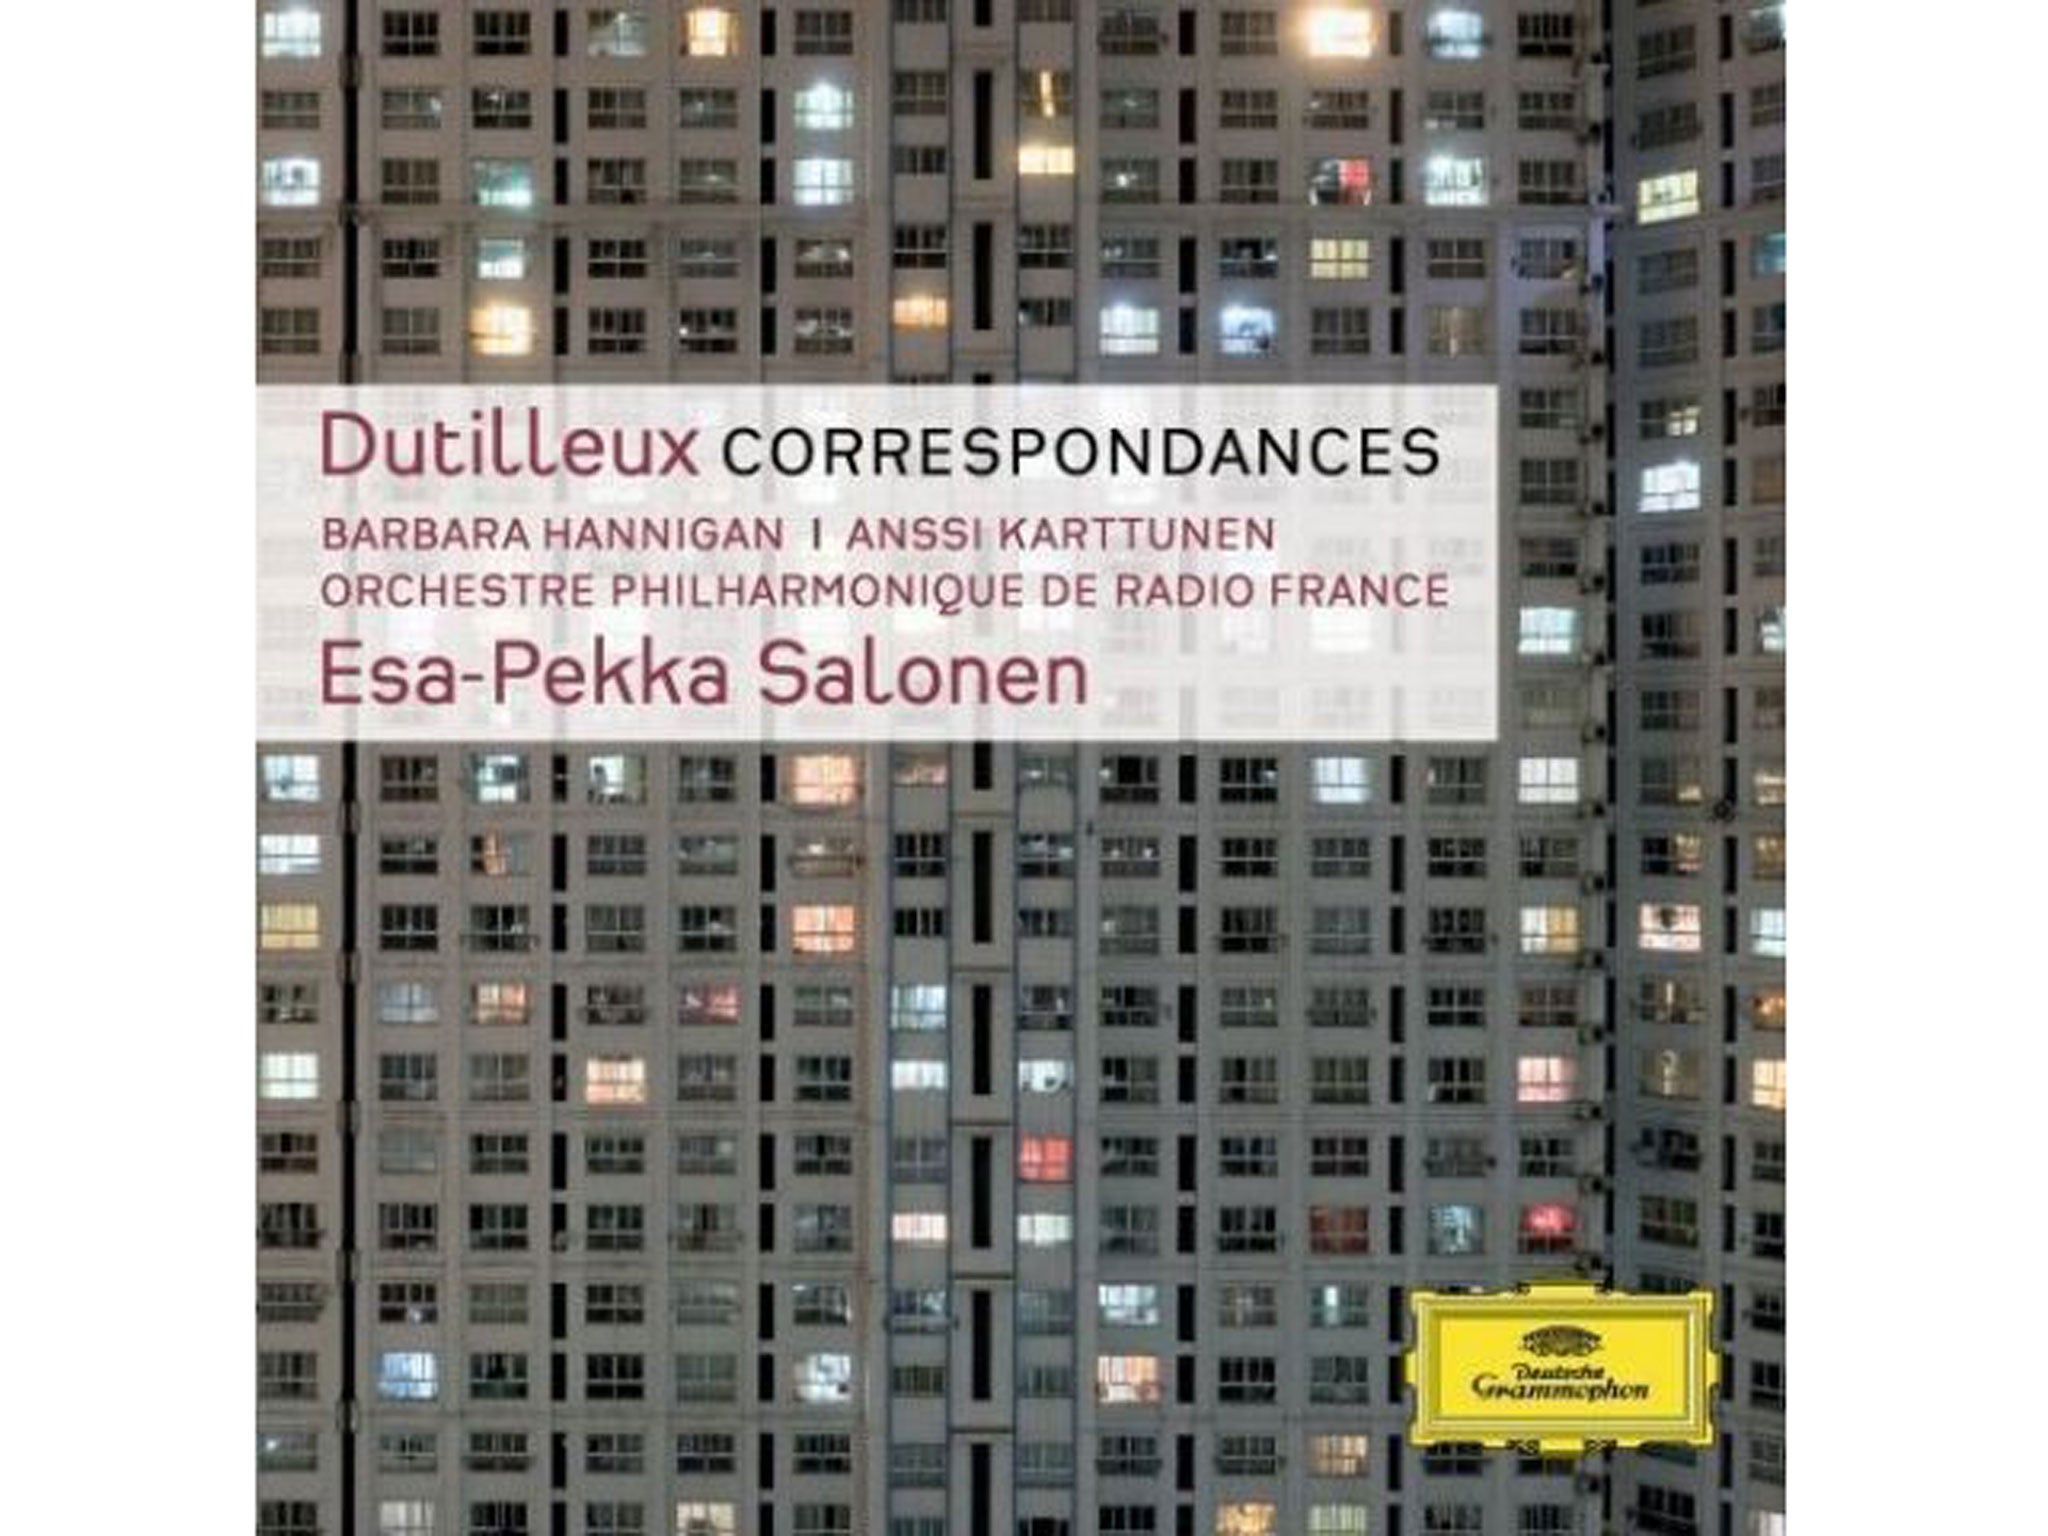 Esa-Pekka Salonen, Dutilleux: Correspondances (Deutsche Grammophon)